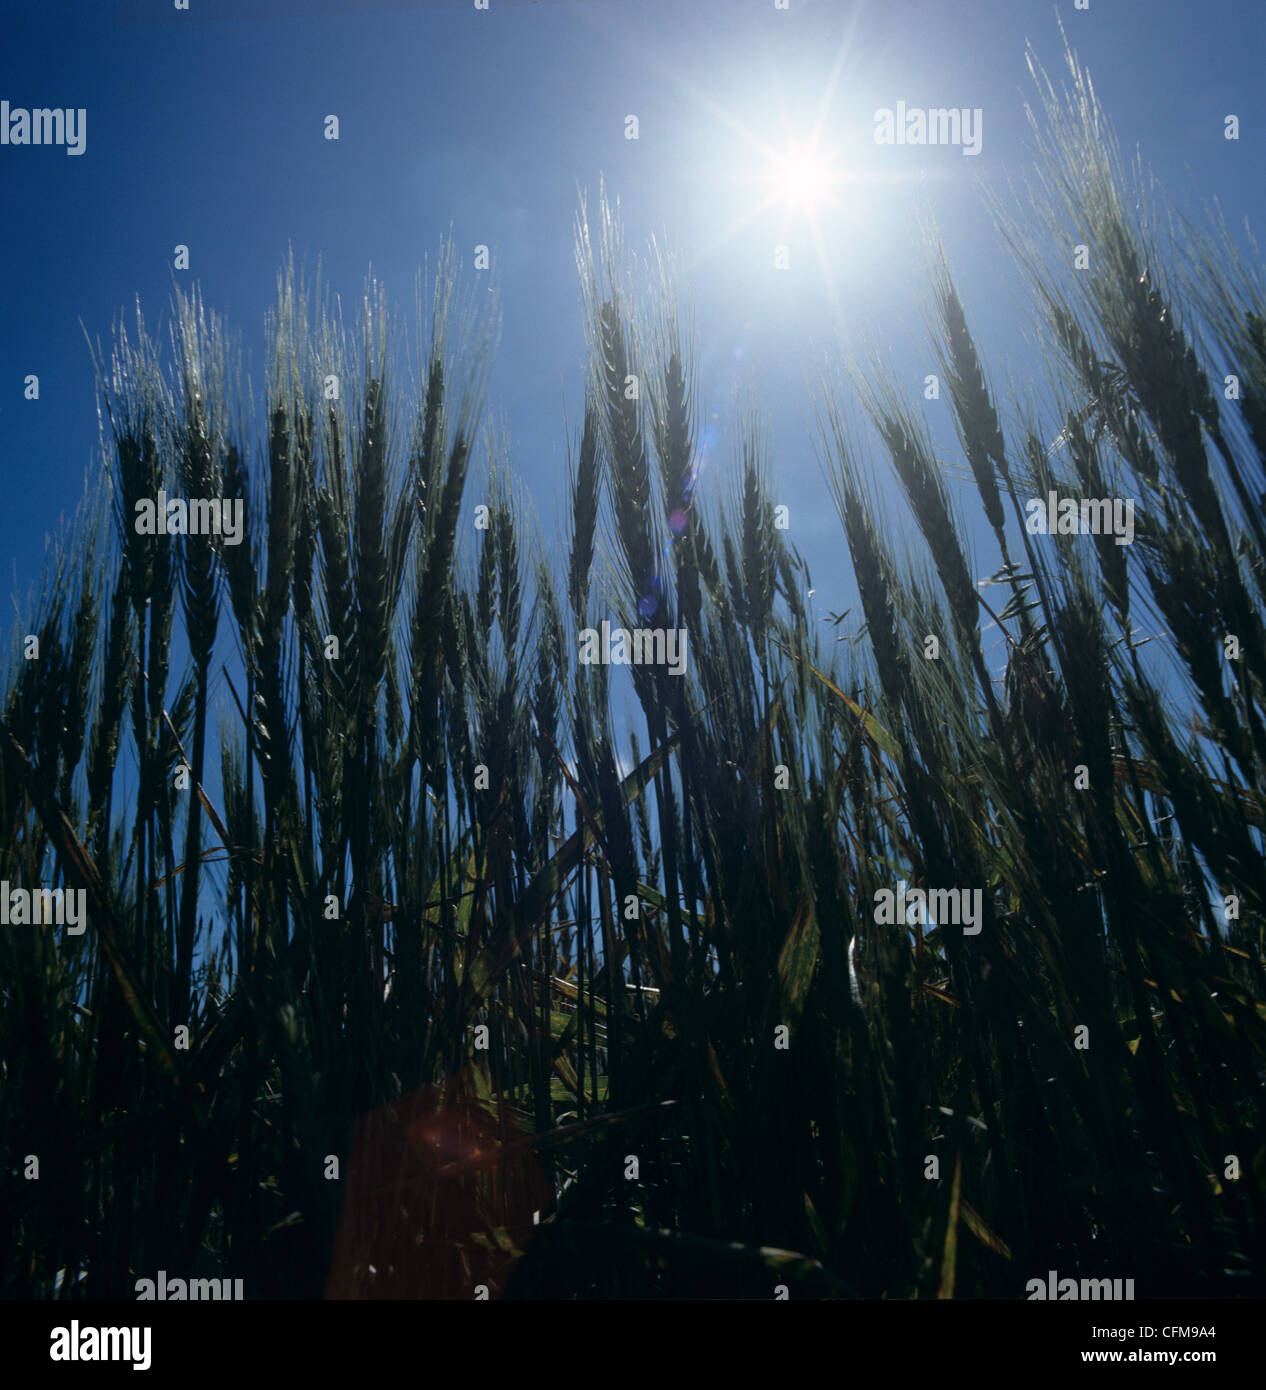 Bärtige Weizenernte im Ohr gegen Mittag Sonne, Kansas, USA Stockfoto